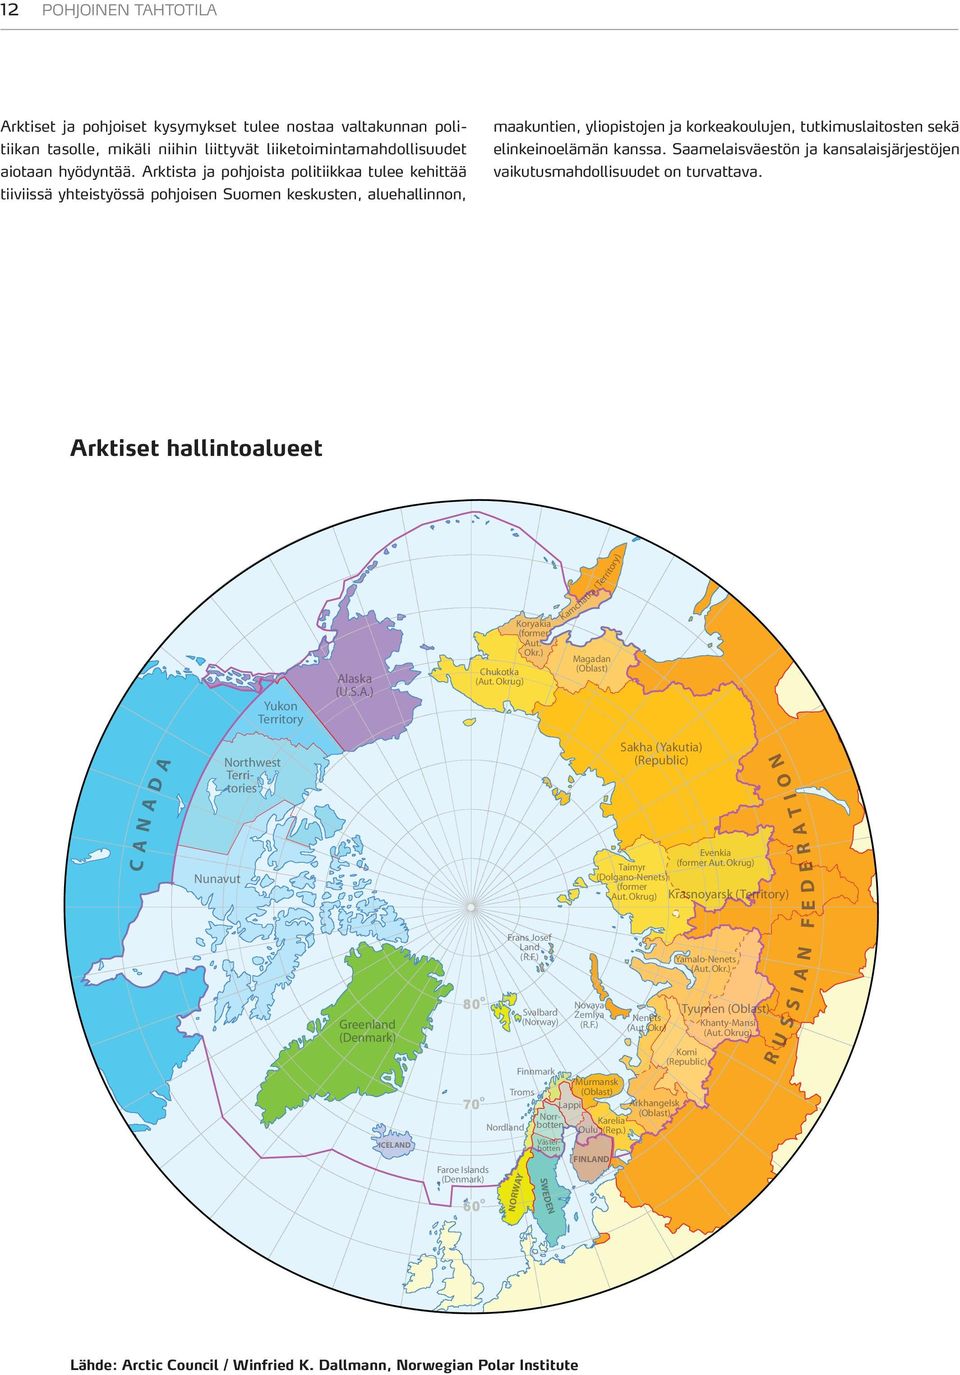 Arktista ja pohjoista politiikkaa tulee kehittää tiiviissä yhteistyössä pohjoisen Suomen keskusten, aluehallinnon, Arktiset hallintoalueet rit or y ) Arctic administrative areas a( Te r compiled by